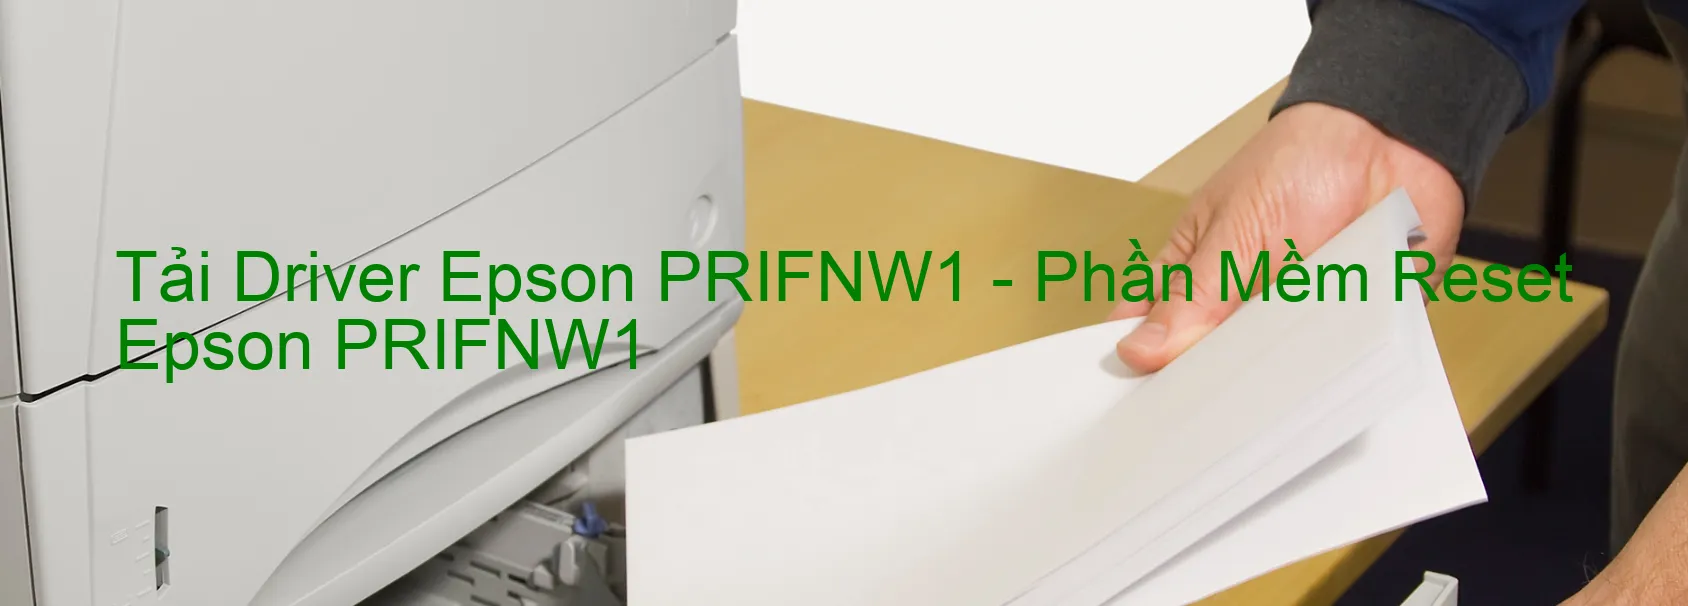 Driver Epson PRIFNW1, Phần Mềm Reset Epson PRIFNW1